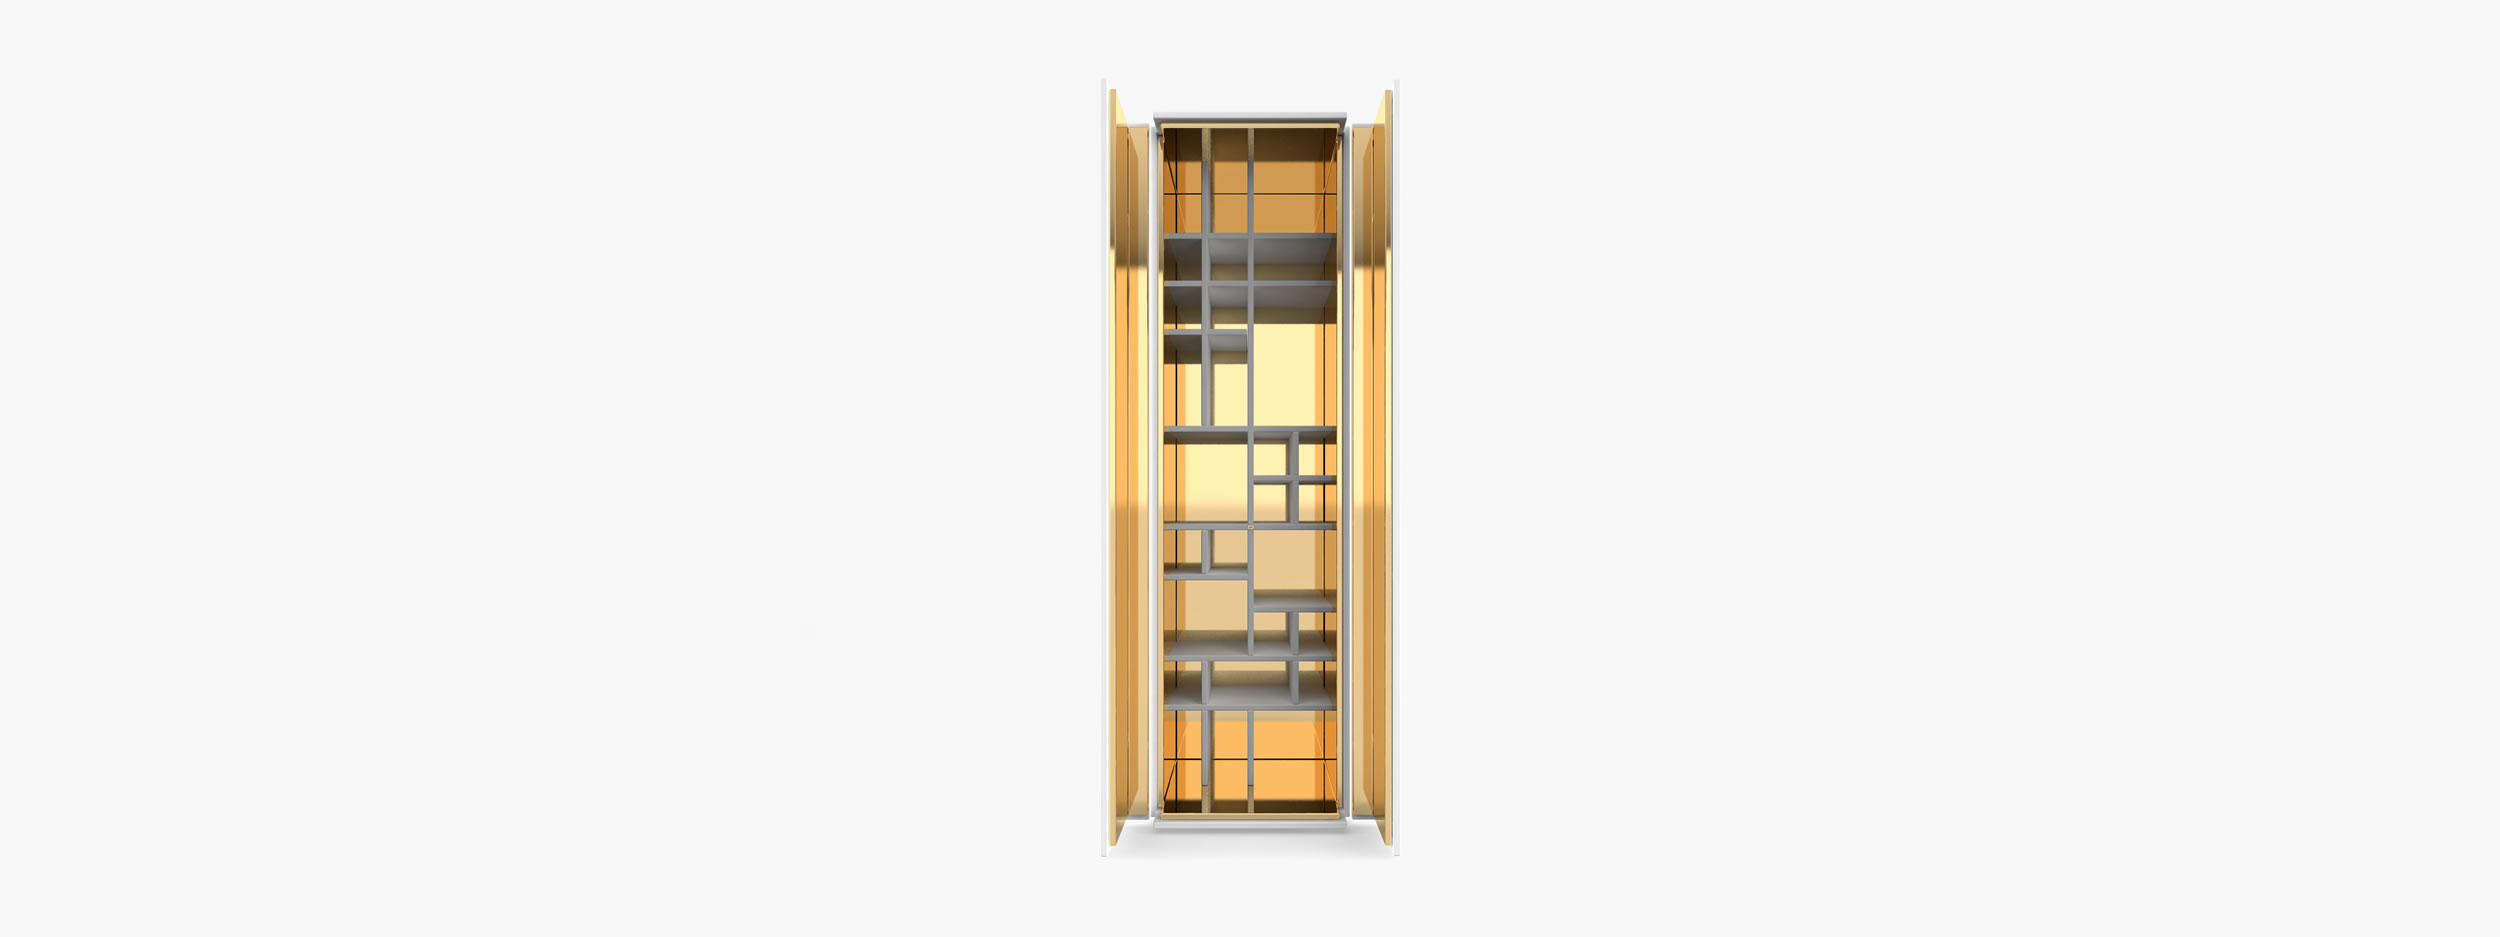 Schrank Regal Innenabteil weiss archidaily Esszimmer minimalist Schraenke FS 158 FELIX SCHWAKE RECHTECK